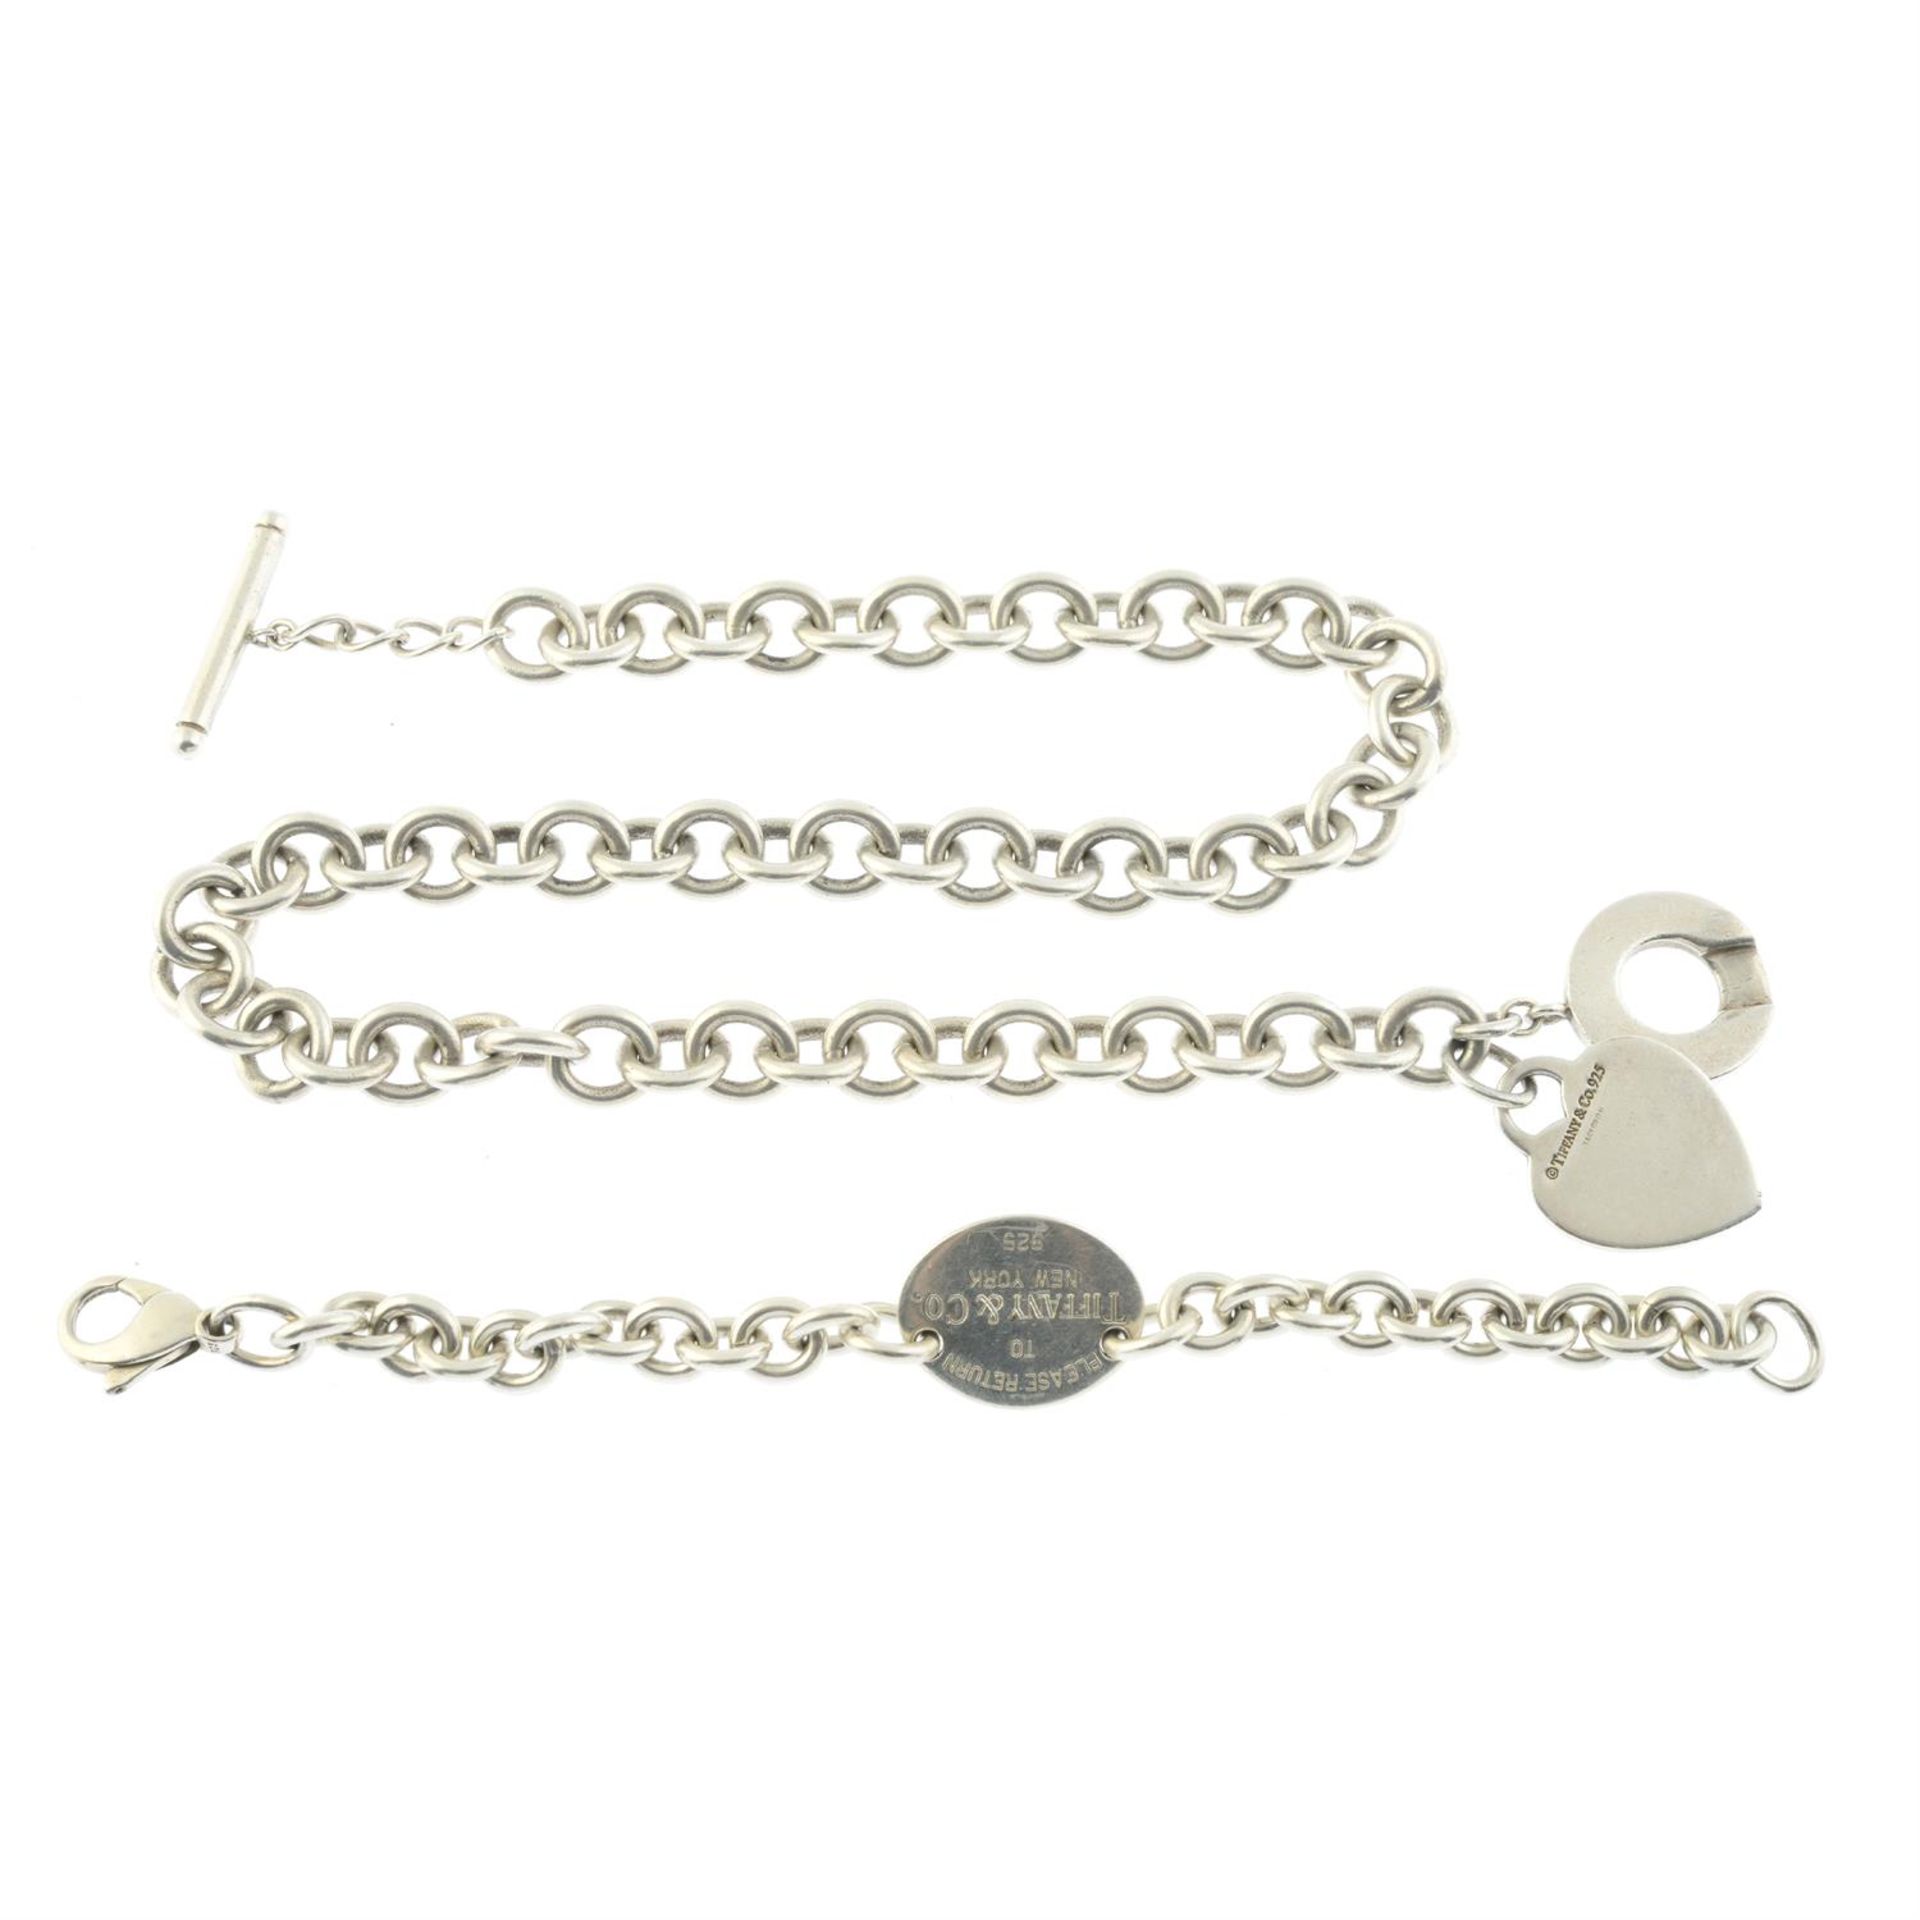 A silver bracelet & necklace, by Tiffany & Co.